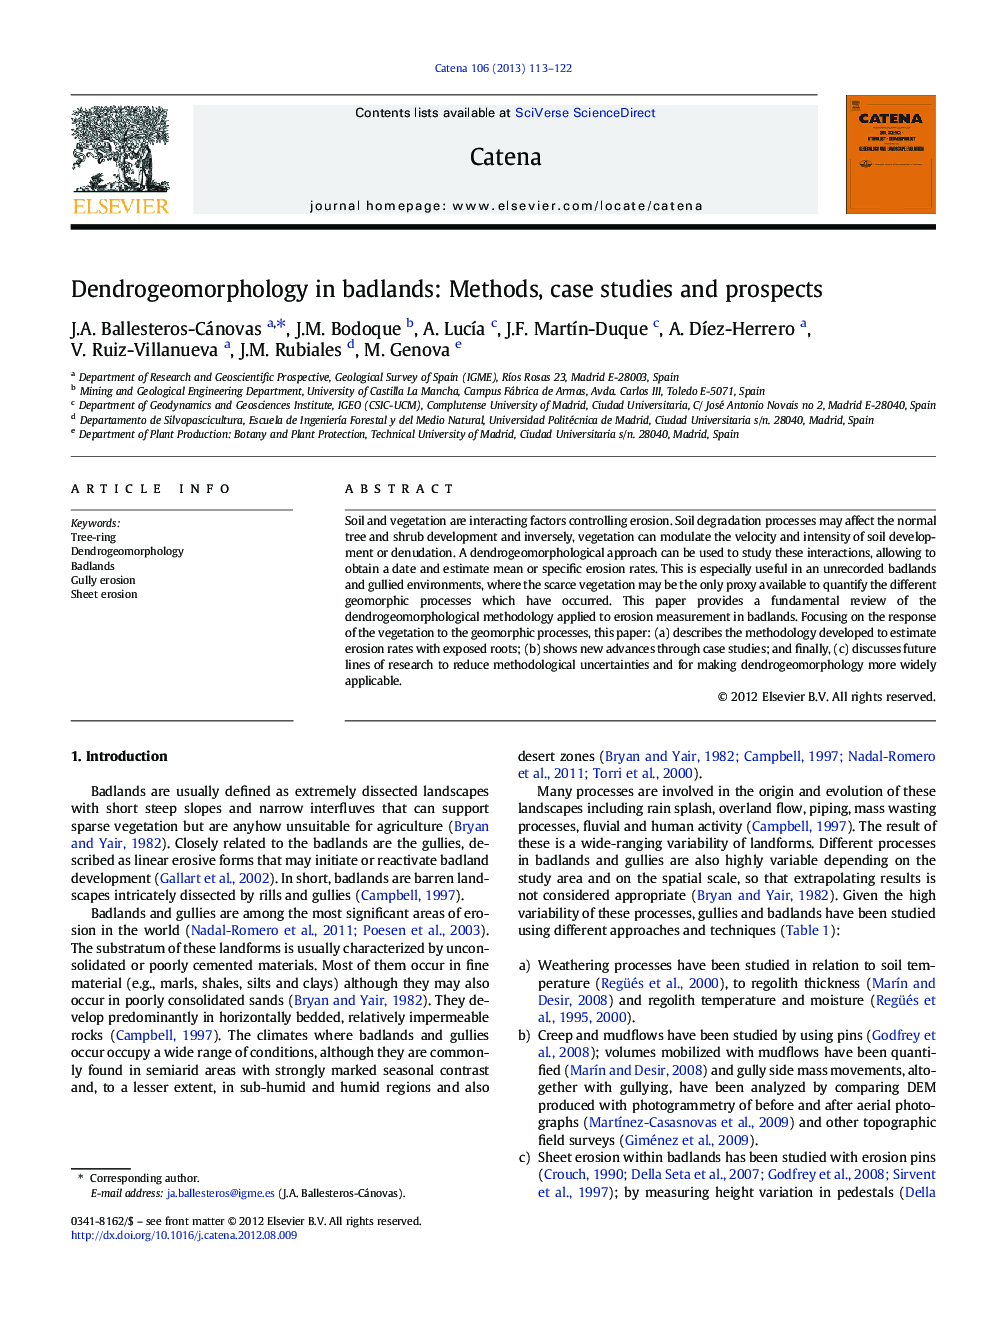 Dendrogeomorphology in badlands: Methods, case studies and prospects